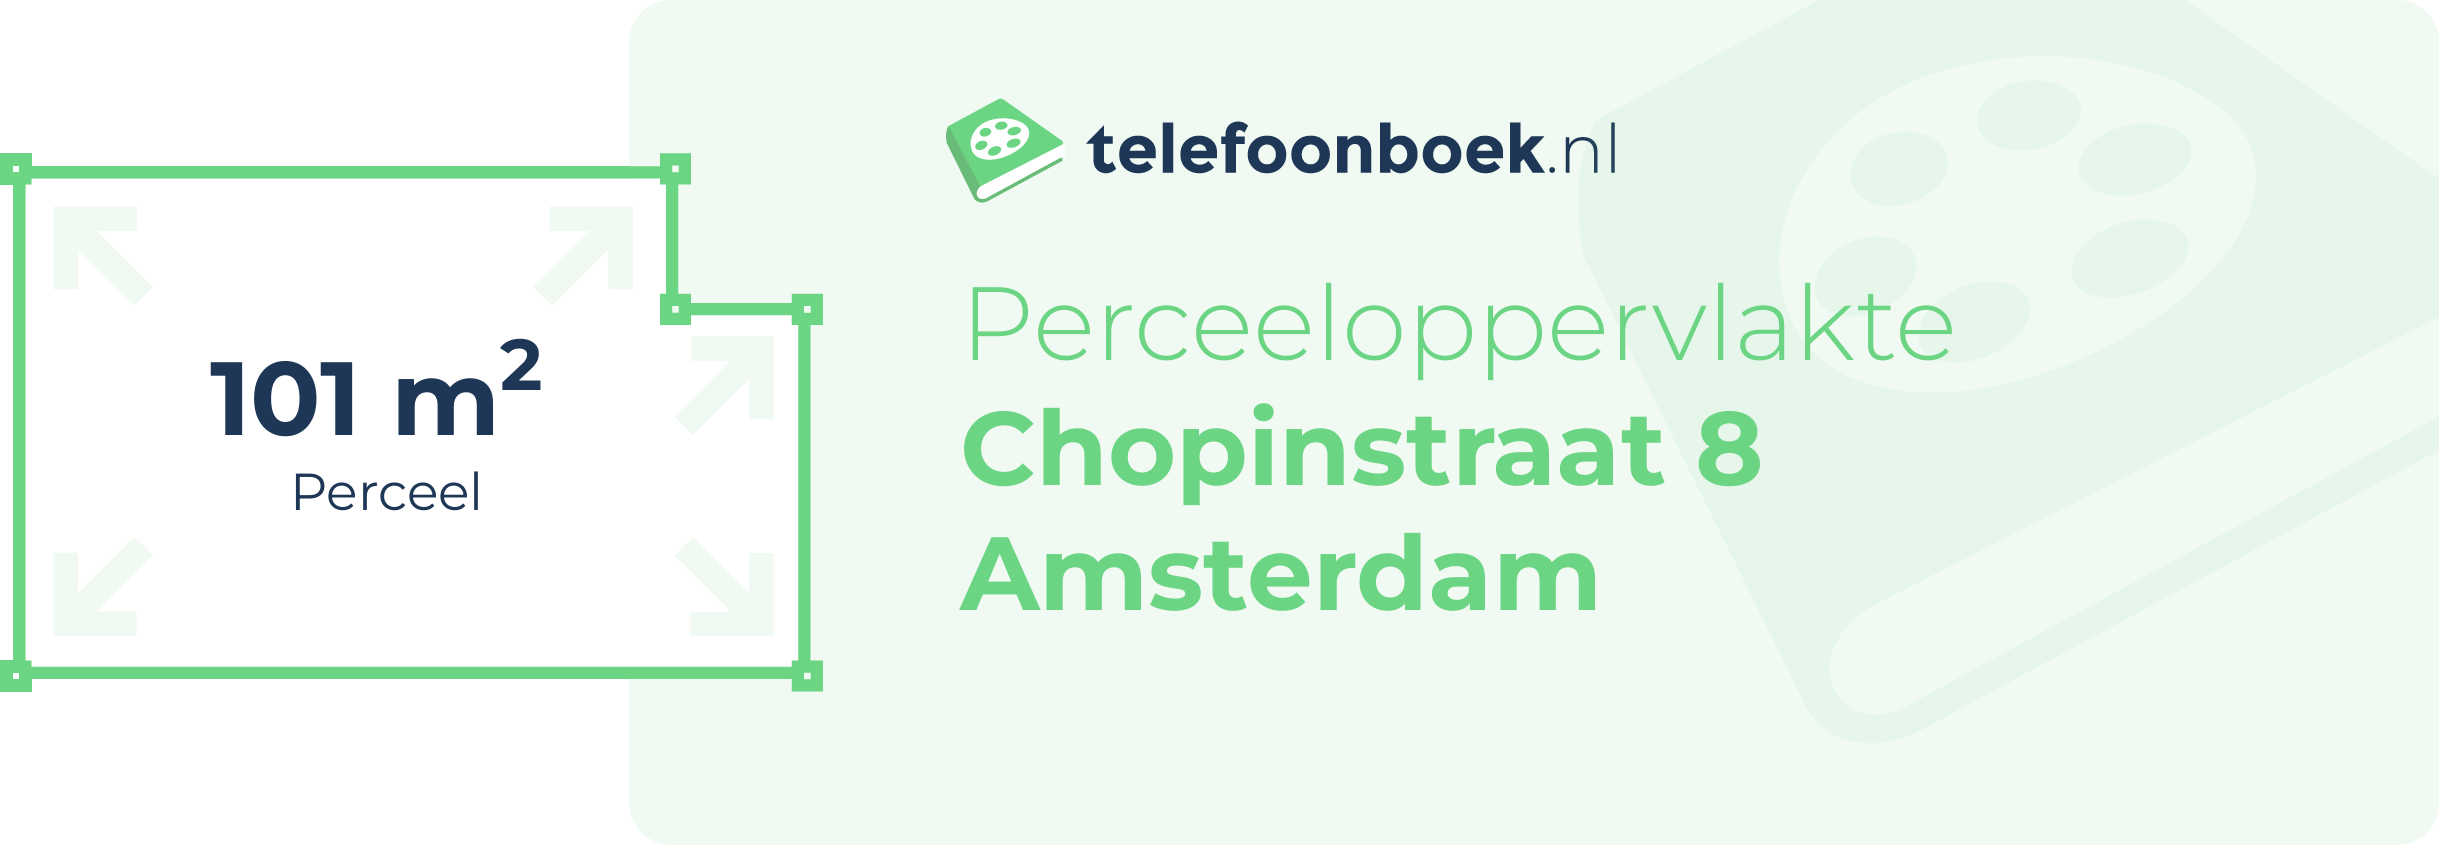 Perceeloppervlakte Chopinstraat 8 Amsterdam